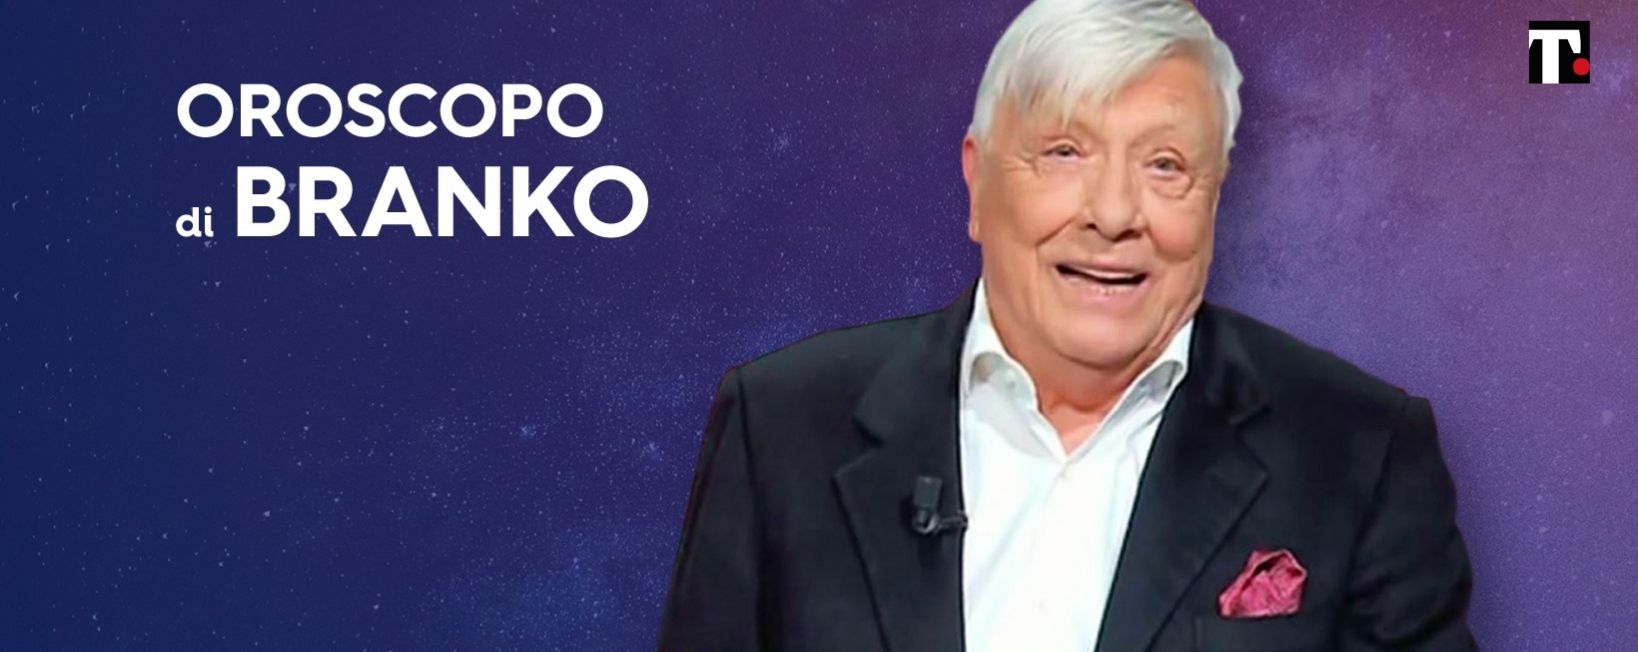 Oroscopo Branko settimanale 1 6 luglio (foto Facebook)